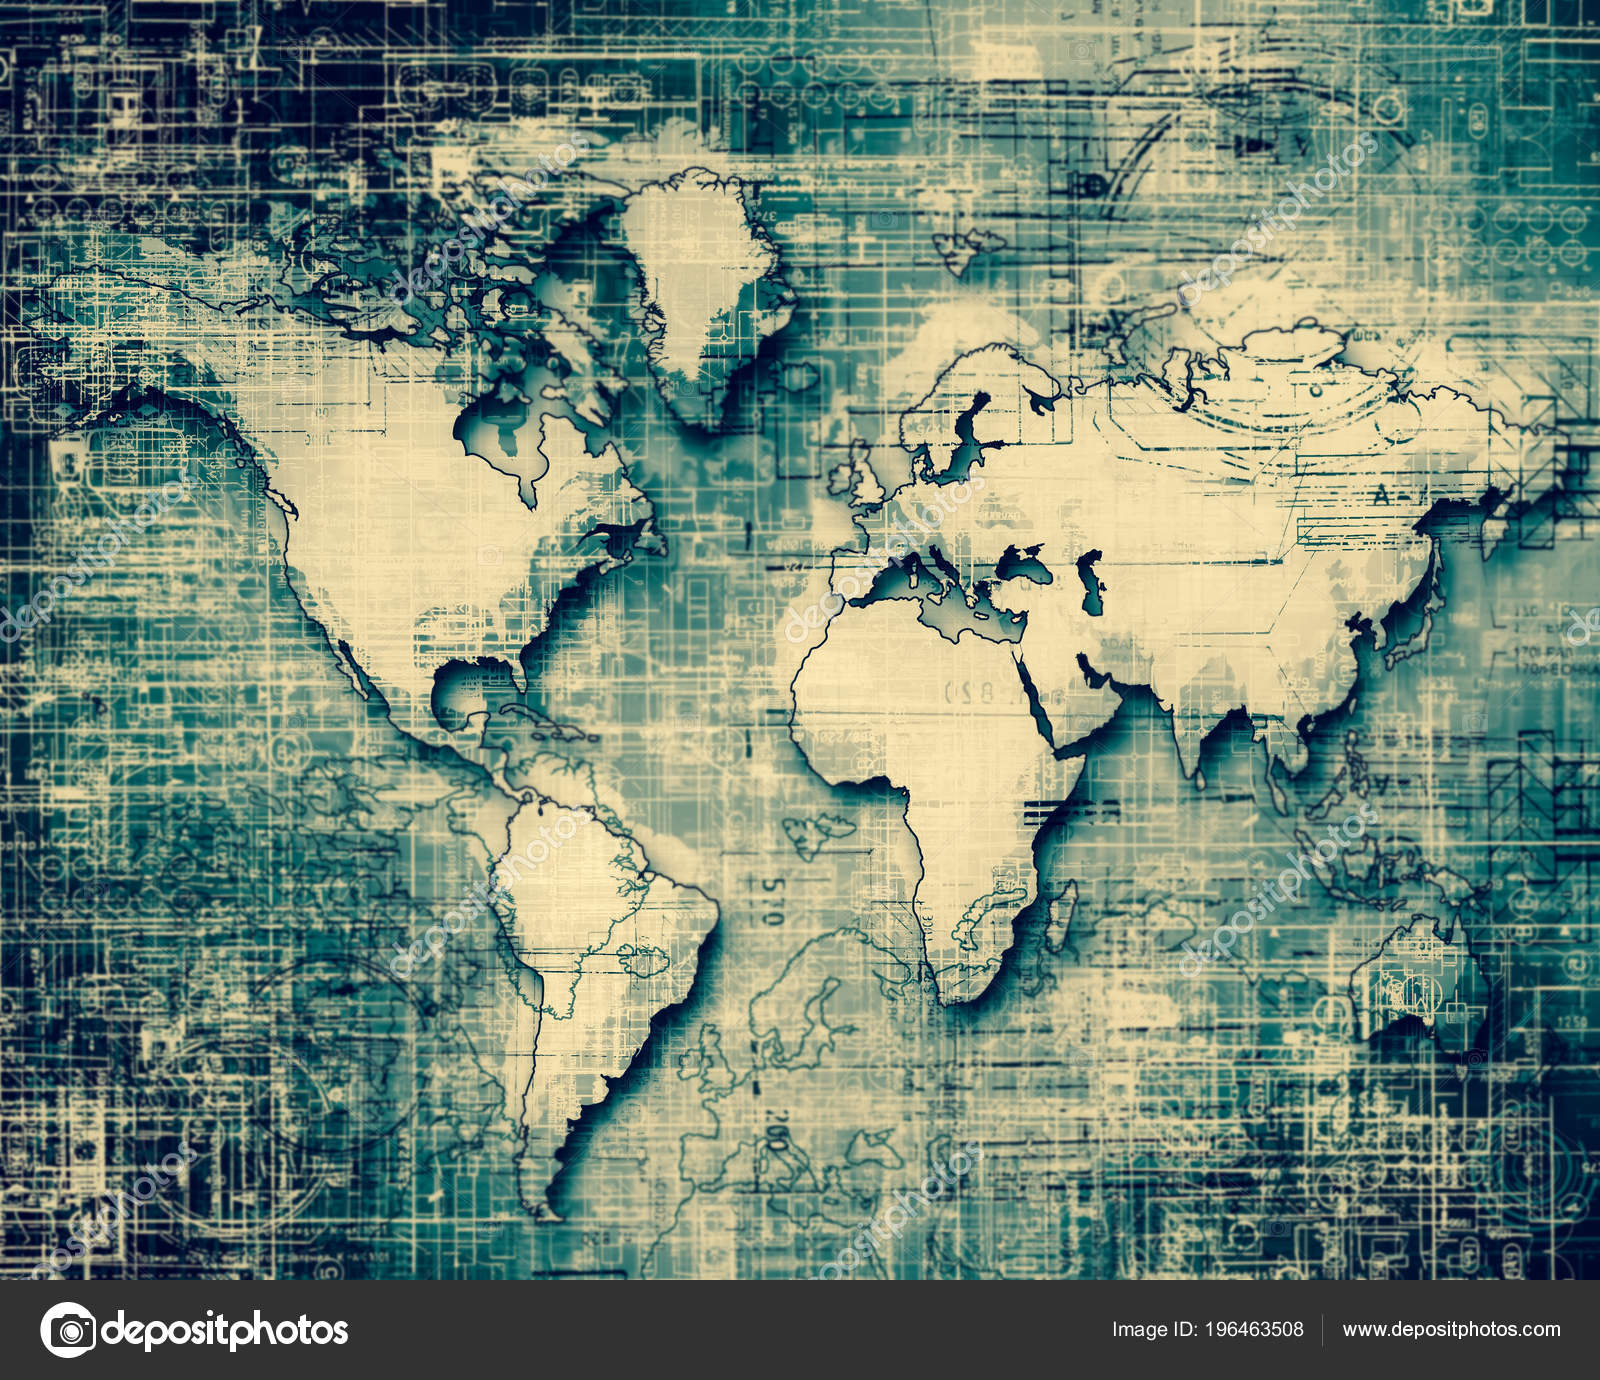 internet map wallpaper